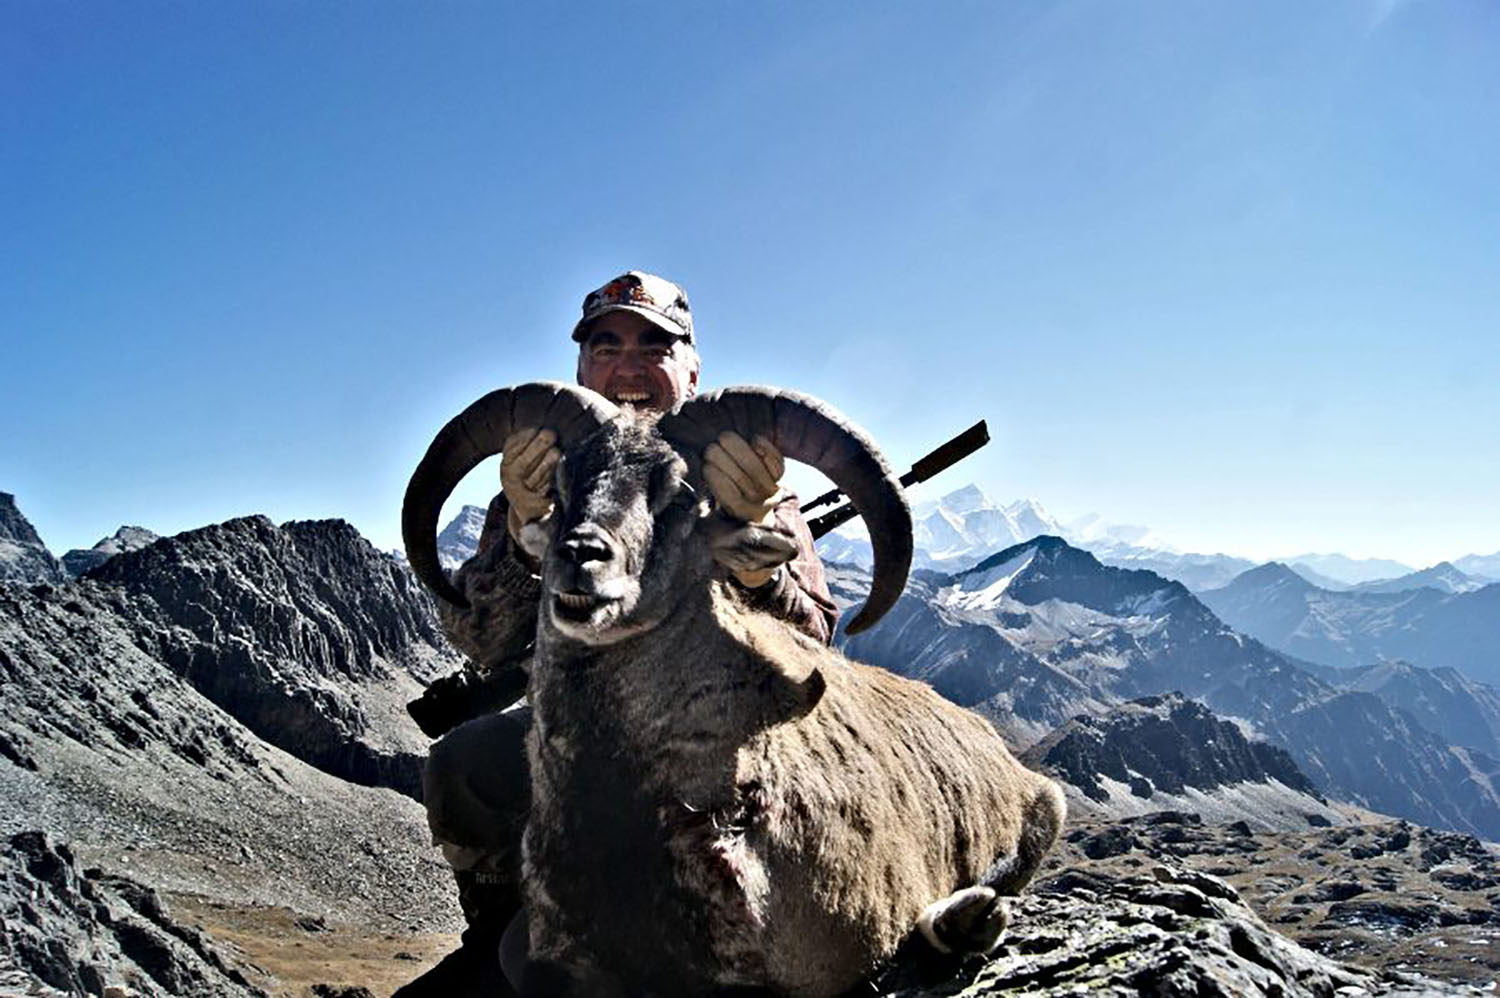 ढोरपाटनमा ८ जना शिकारी पर्यटकले १९ वन्यजन्तुको शिकार हर्दै, नेपाली शिकारी अाएनन